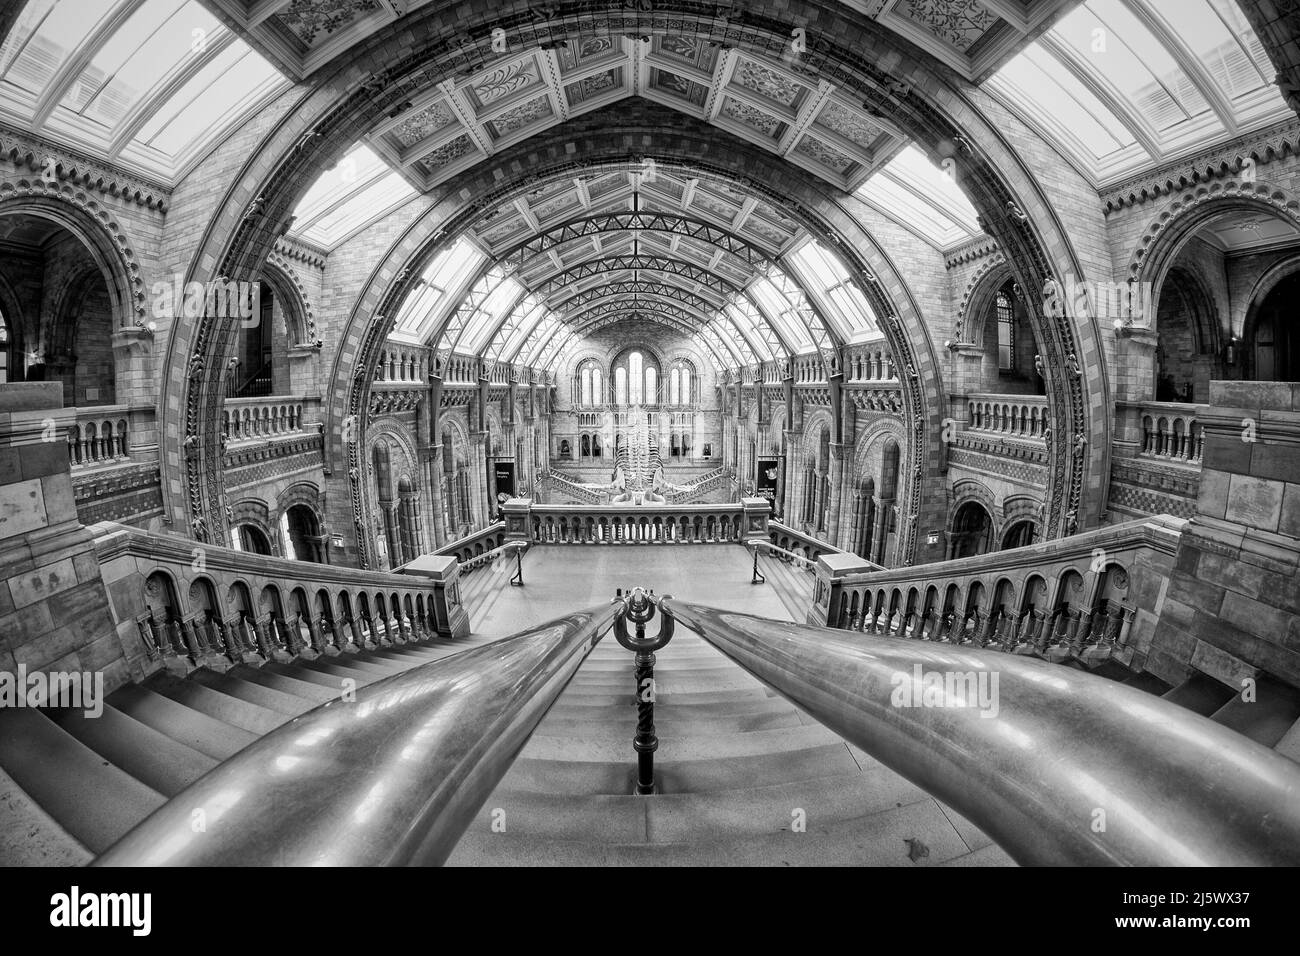 Musée d'Histoire naturelle, Londres, salle principale avec perspective grand angle Banque D'Images